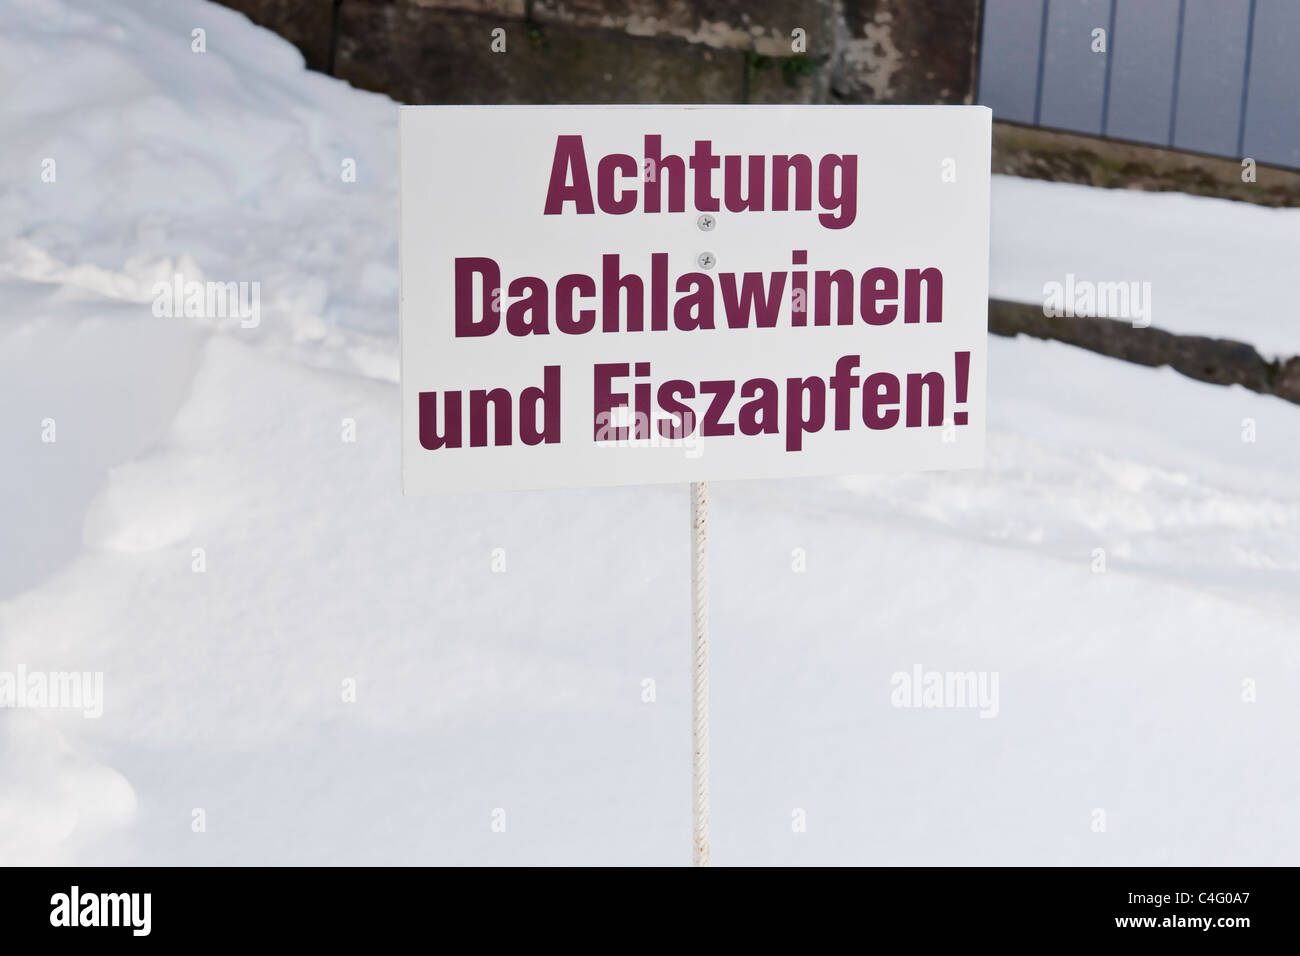 Achtung, Dachlawinen ... | Atención, techo avalanchas ... Foto de stock